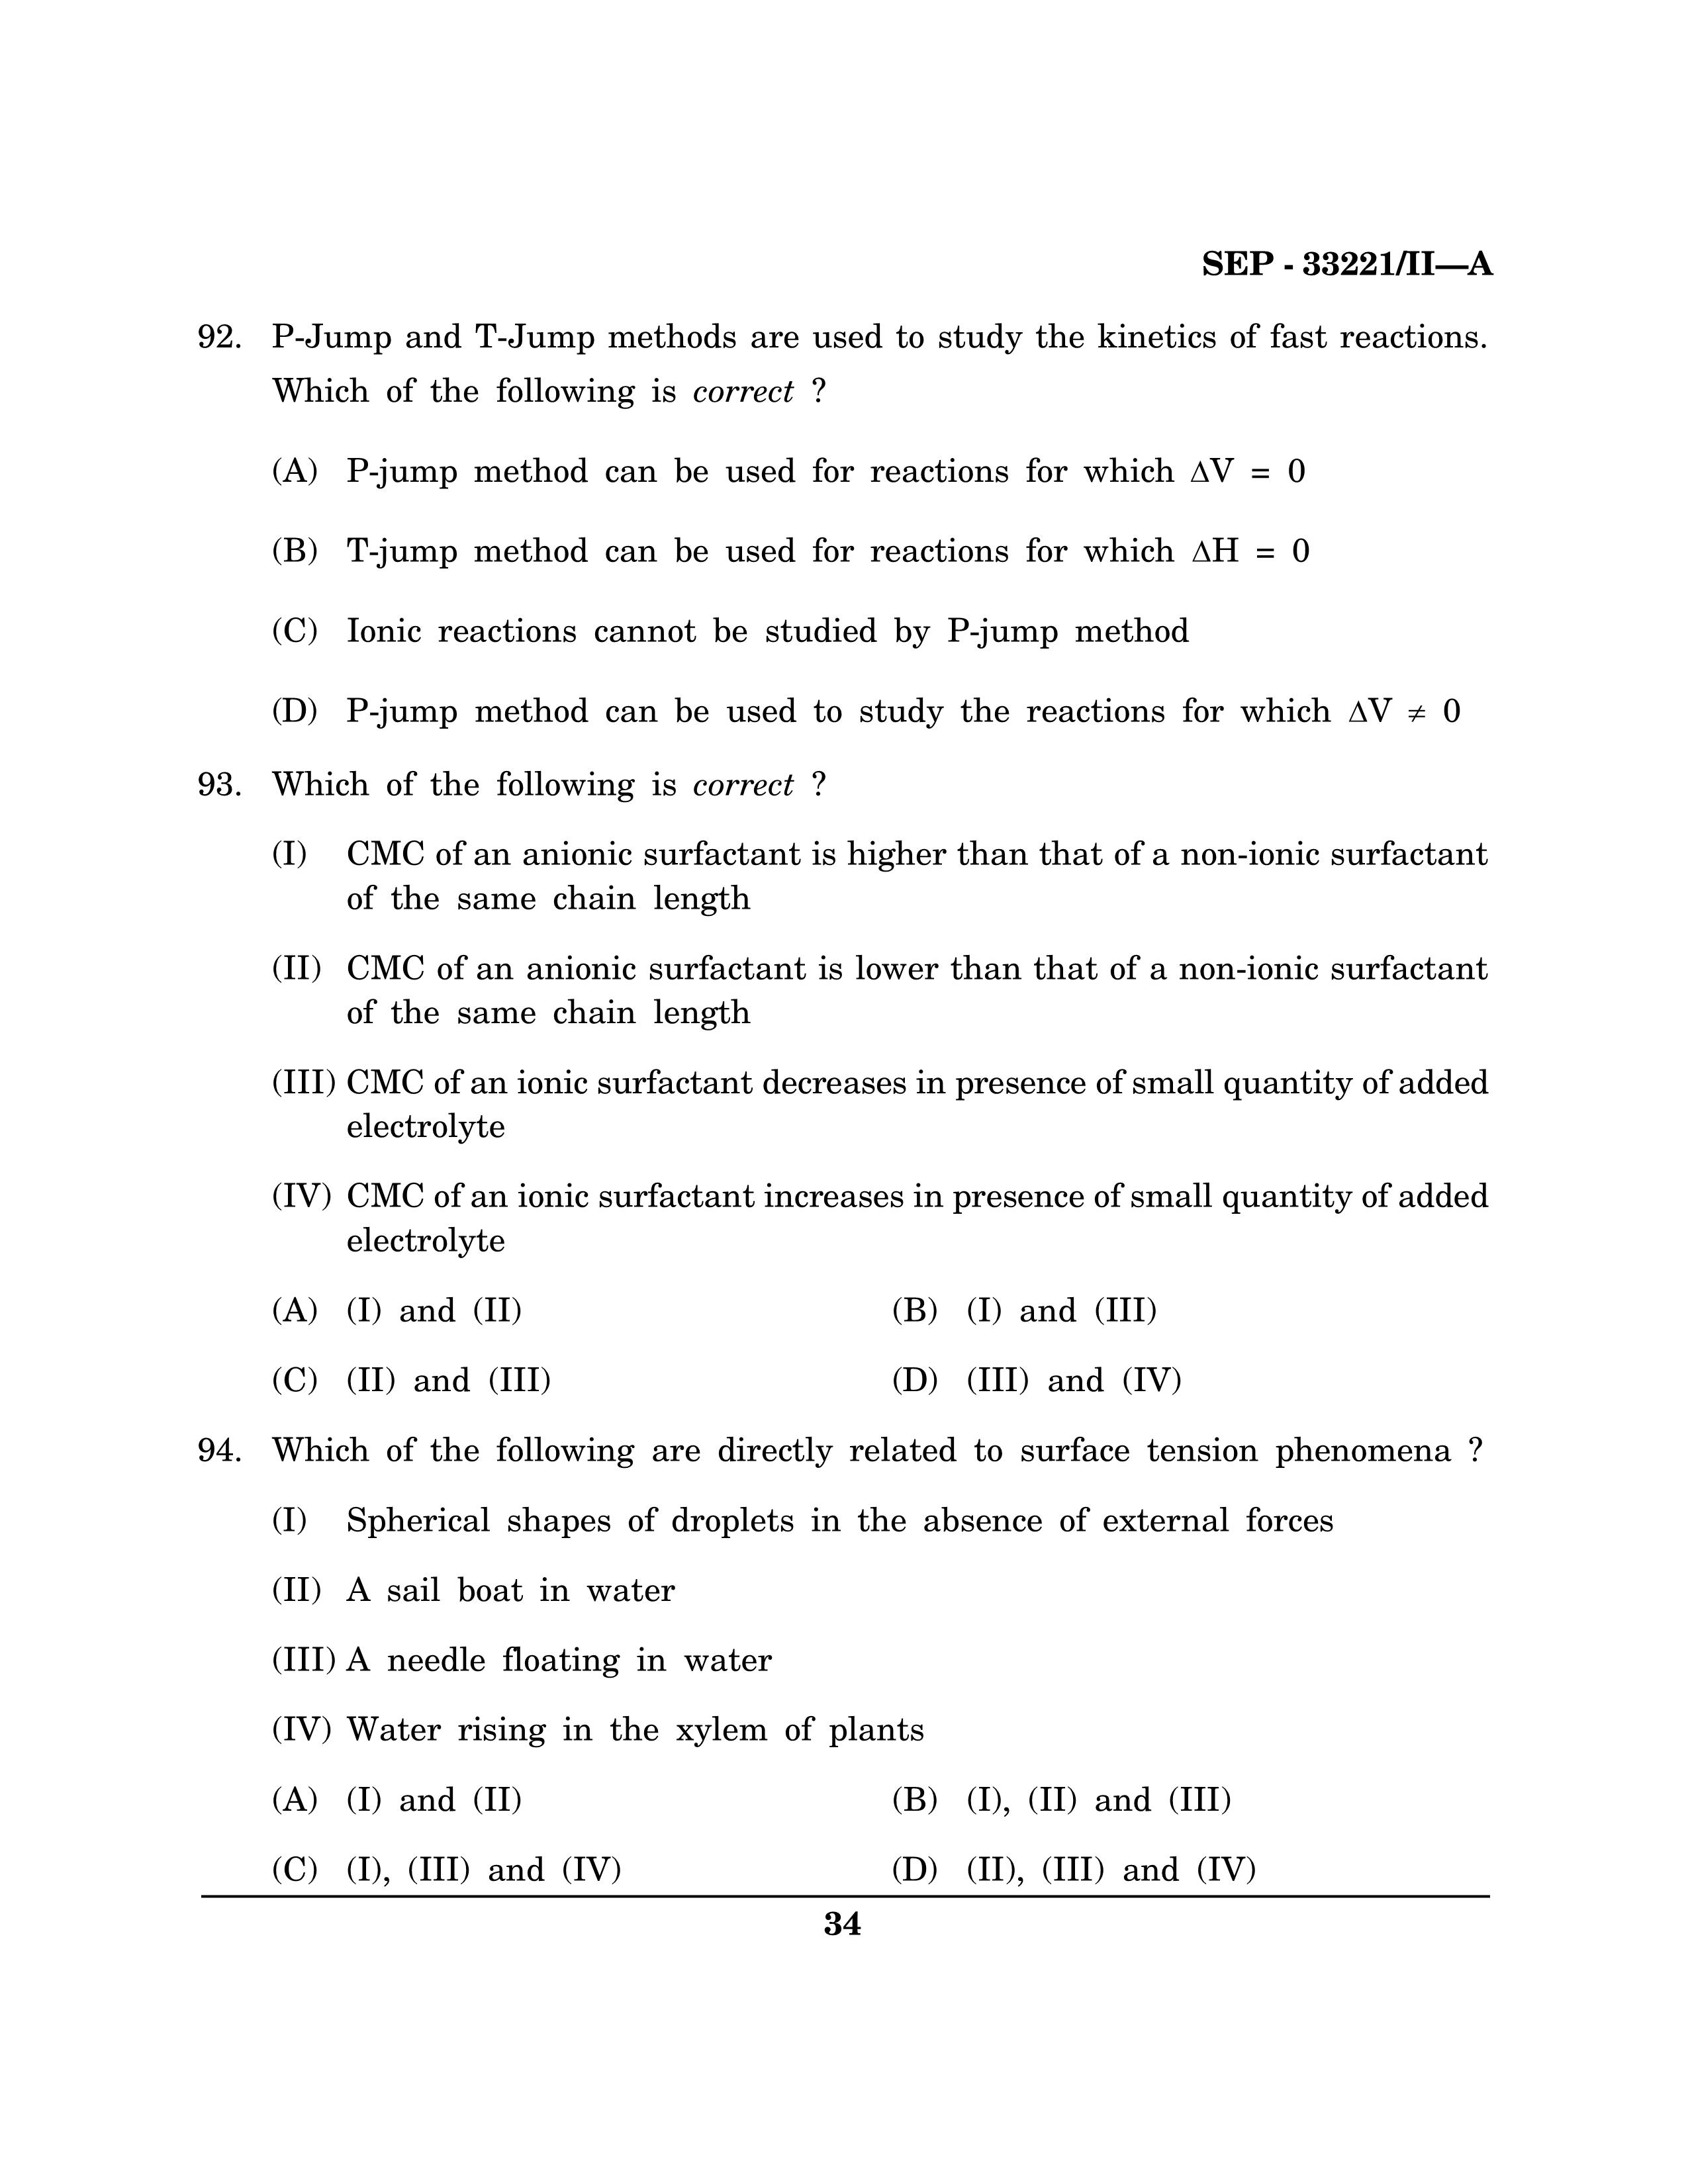 Maharashtra SET Chemical Sciences Exam Question Paper September 2021 33